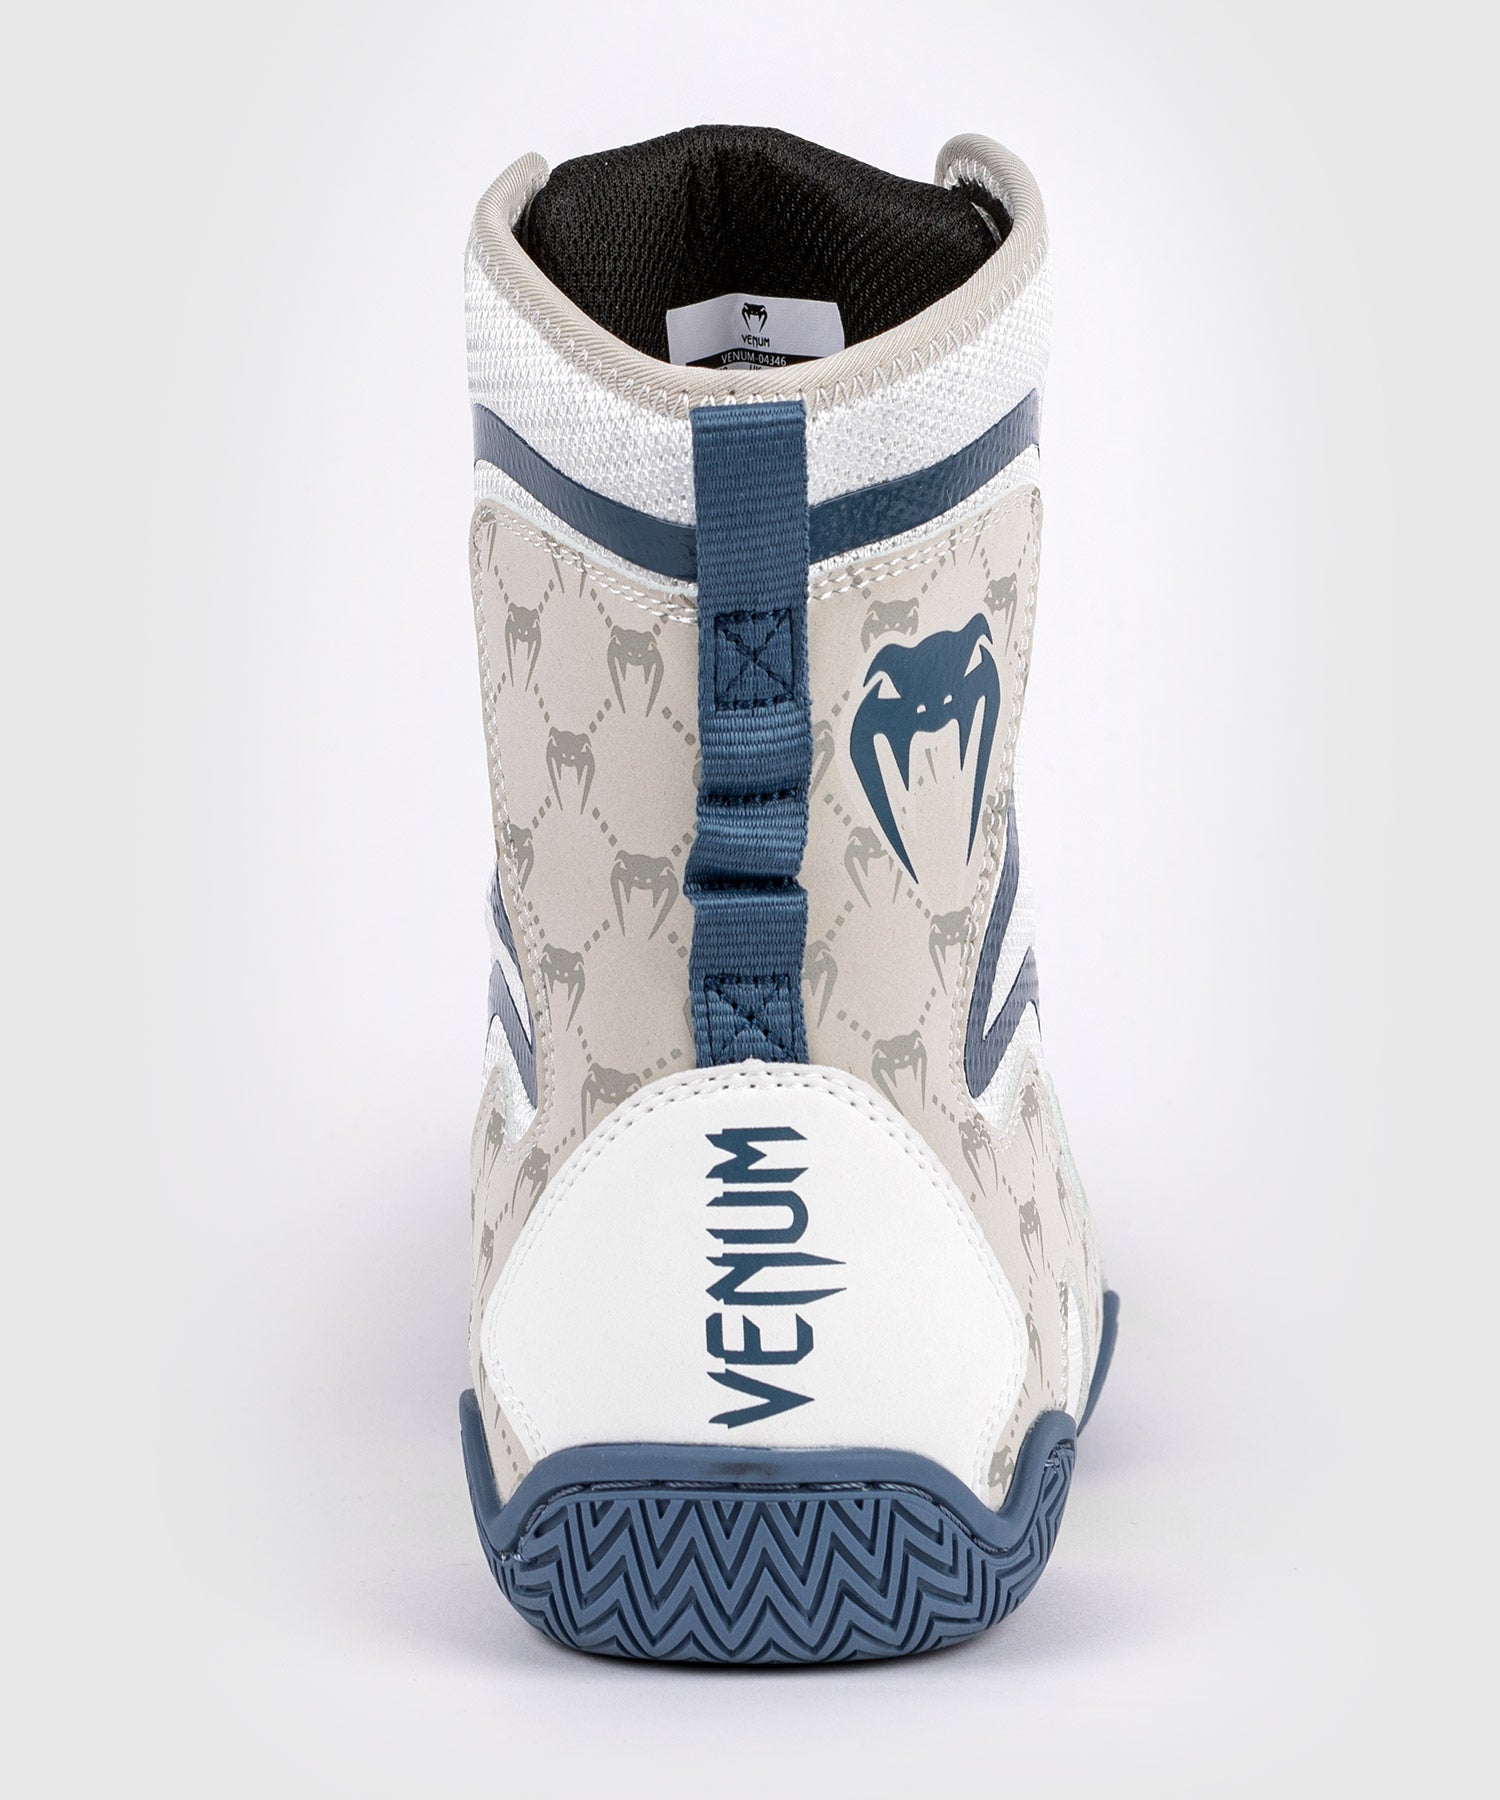 Chaussures de boxe Venum Elite blanc / or > Livraison Gratuite